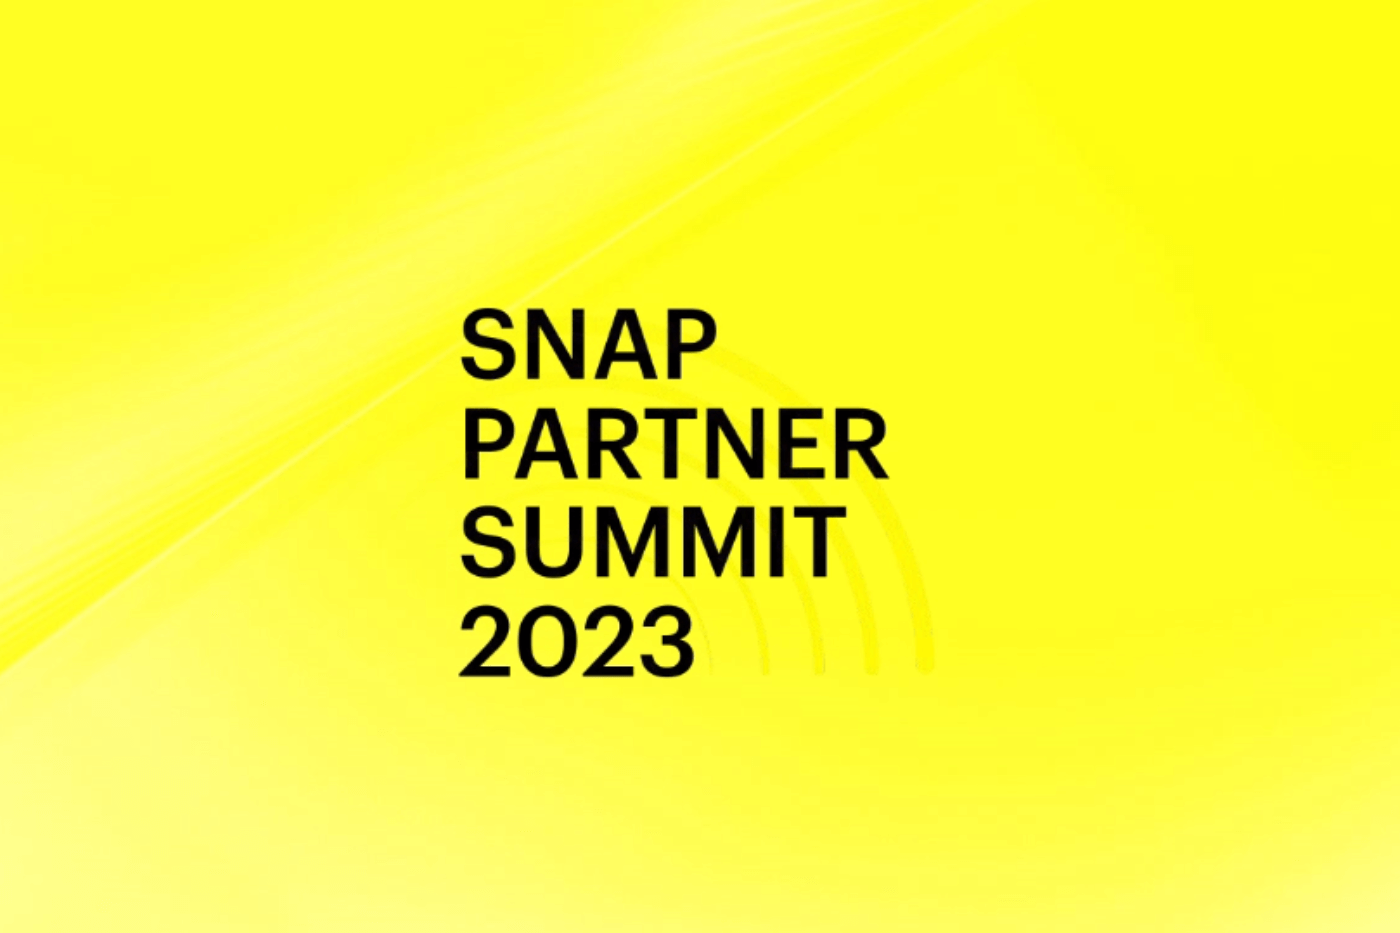 Hội nghị thượng đỉnh đối tác Snap 2023 - Những thay đổi đối với Snapchat và hơn thế nữa